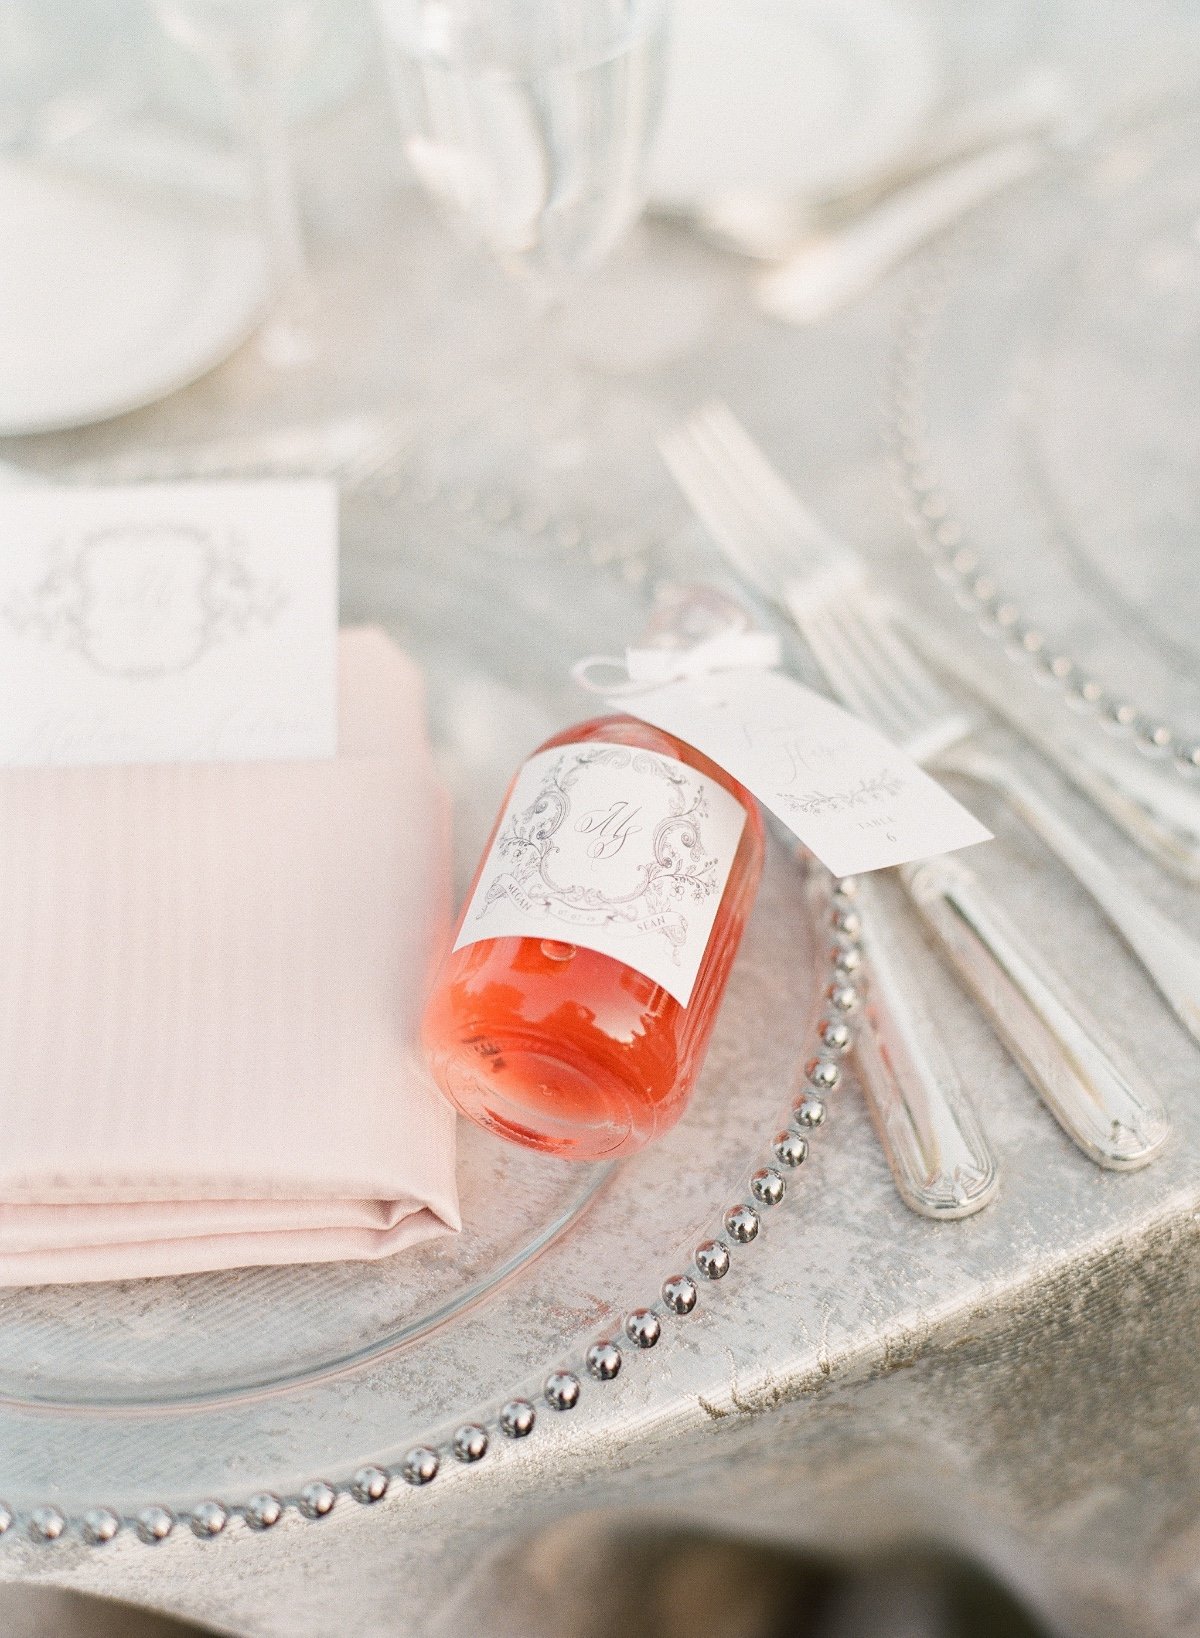 mini cocktail bottles for wedding favors